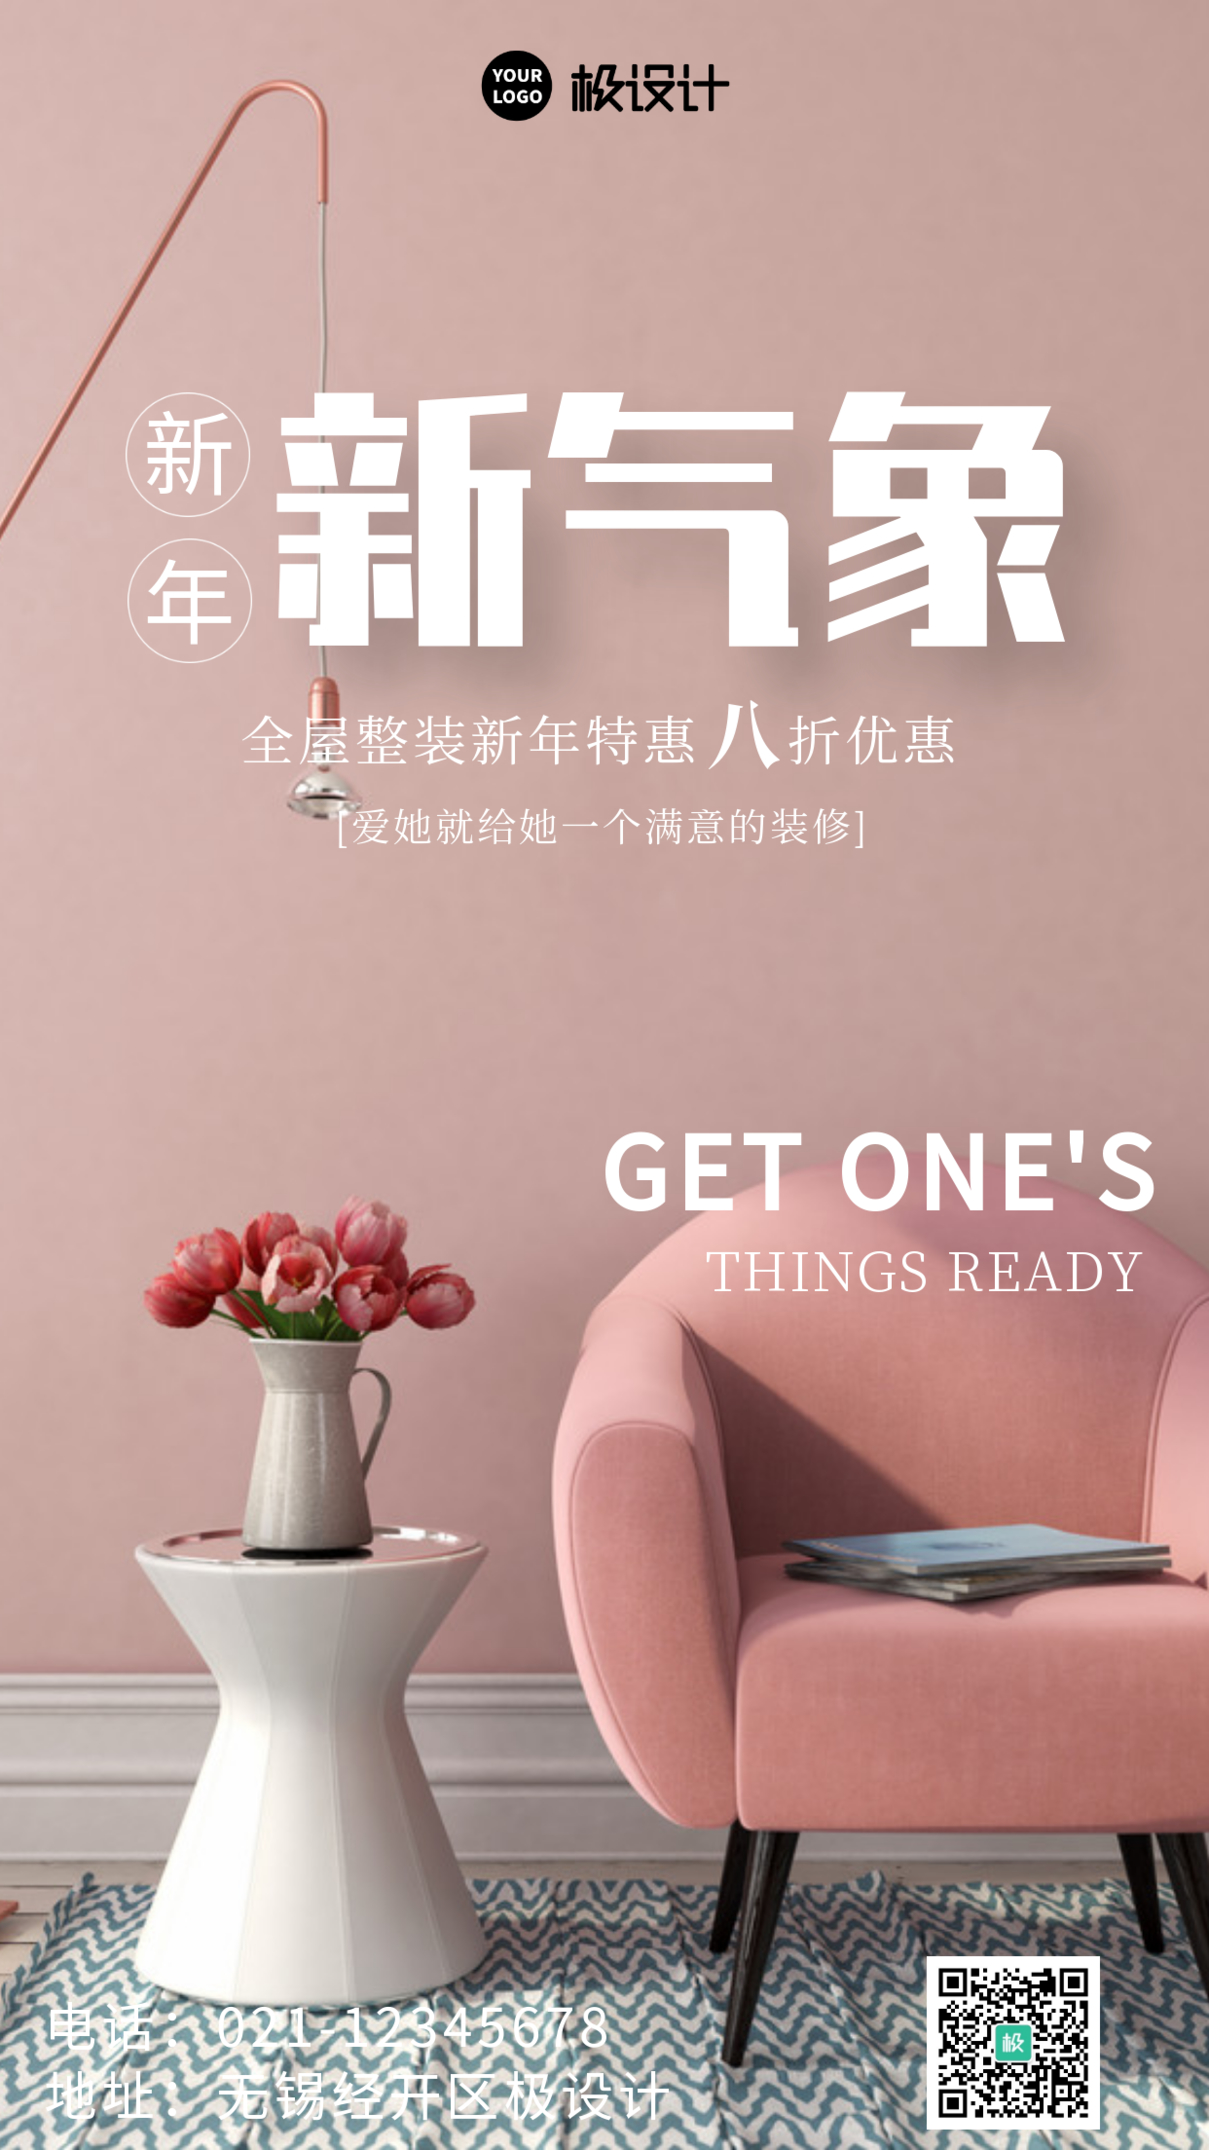 新年新气象全屋整装促销粉色手机营销海报